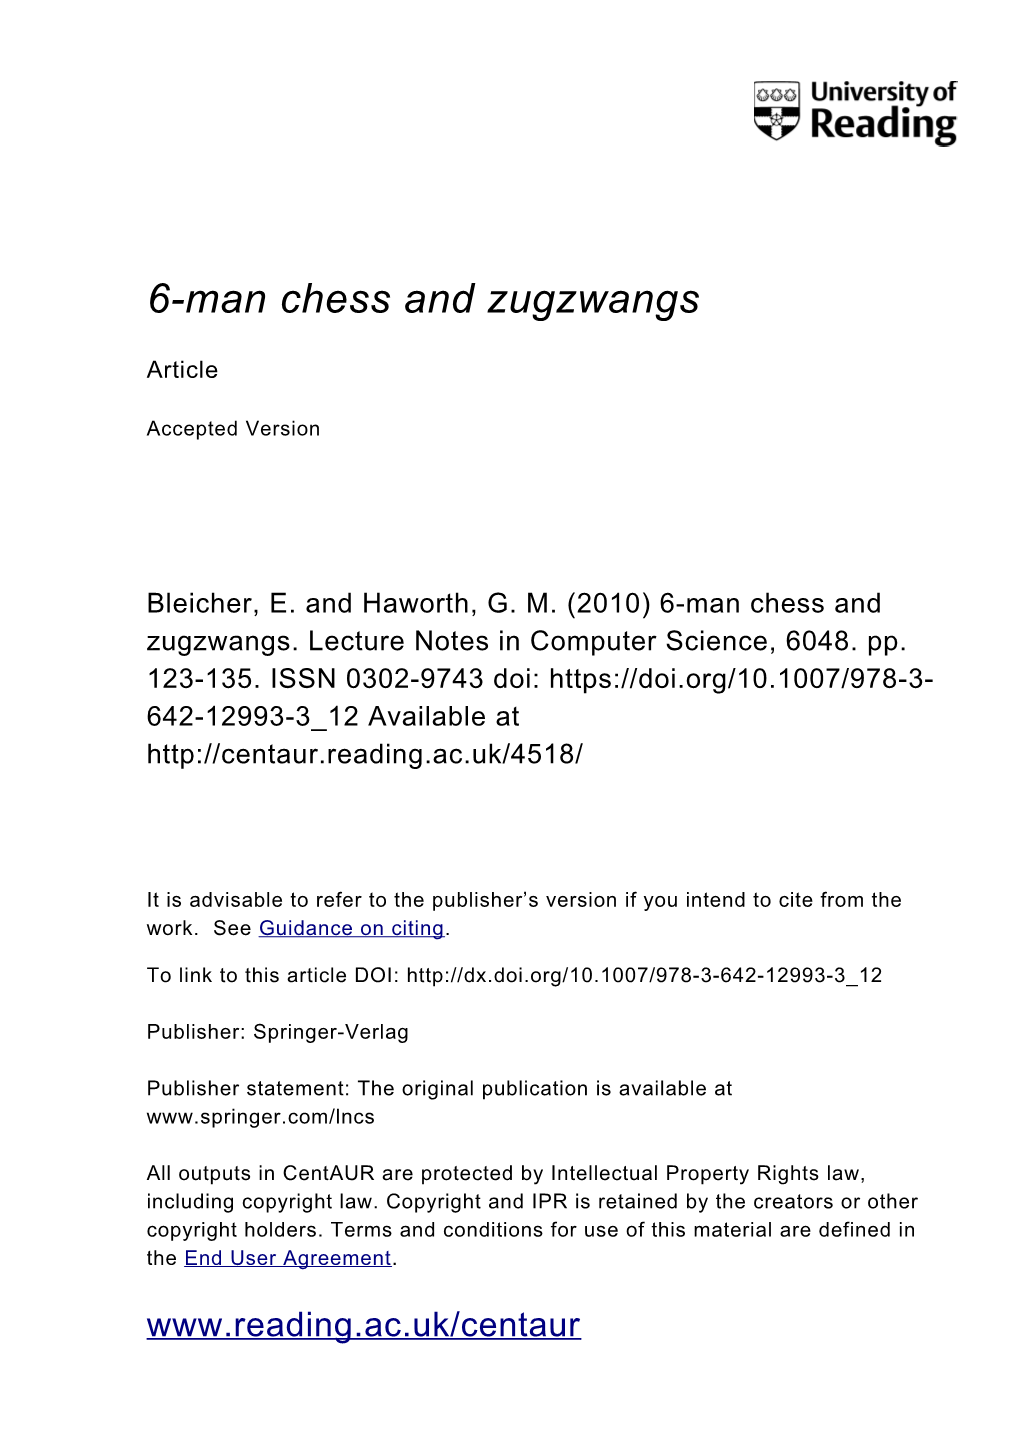 6-Man Chess and Zugzwangs